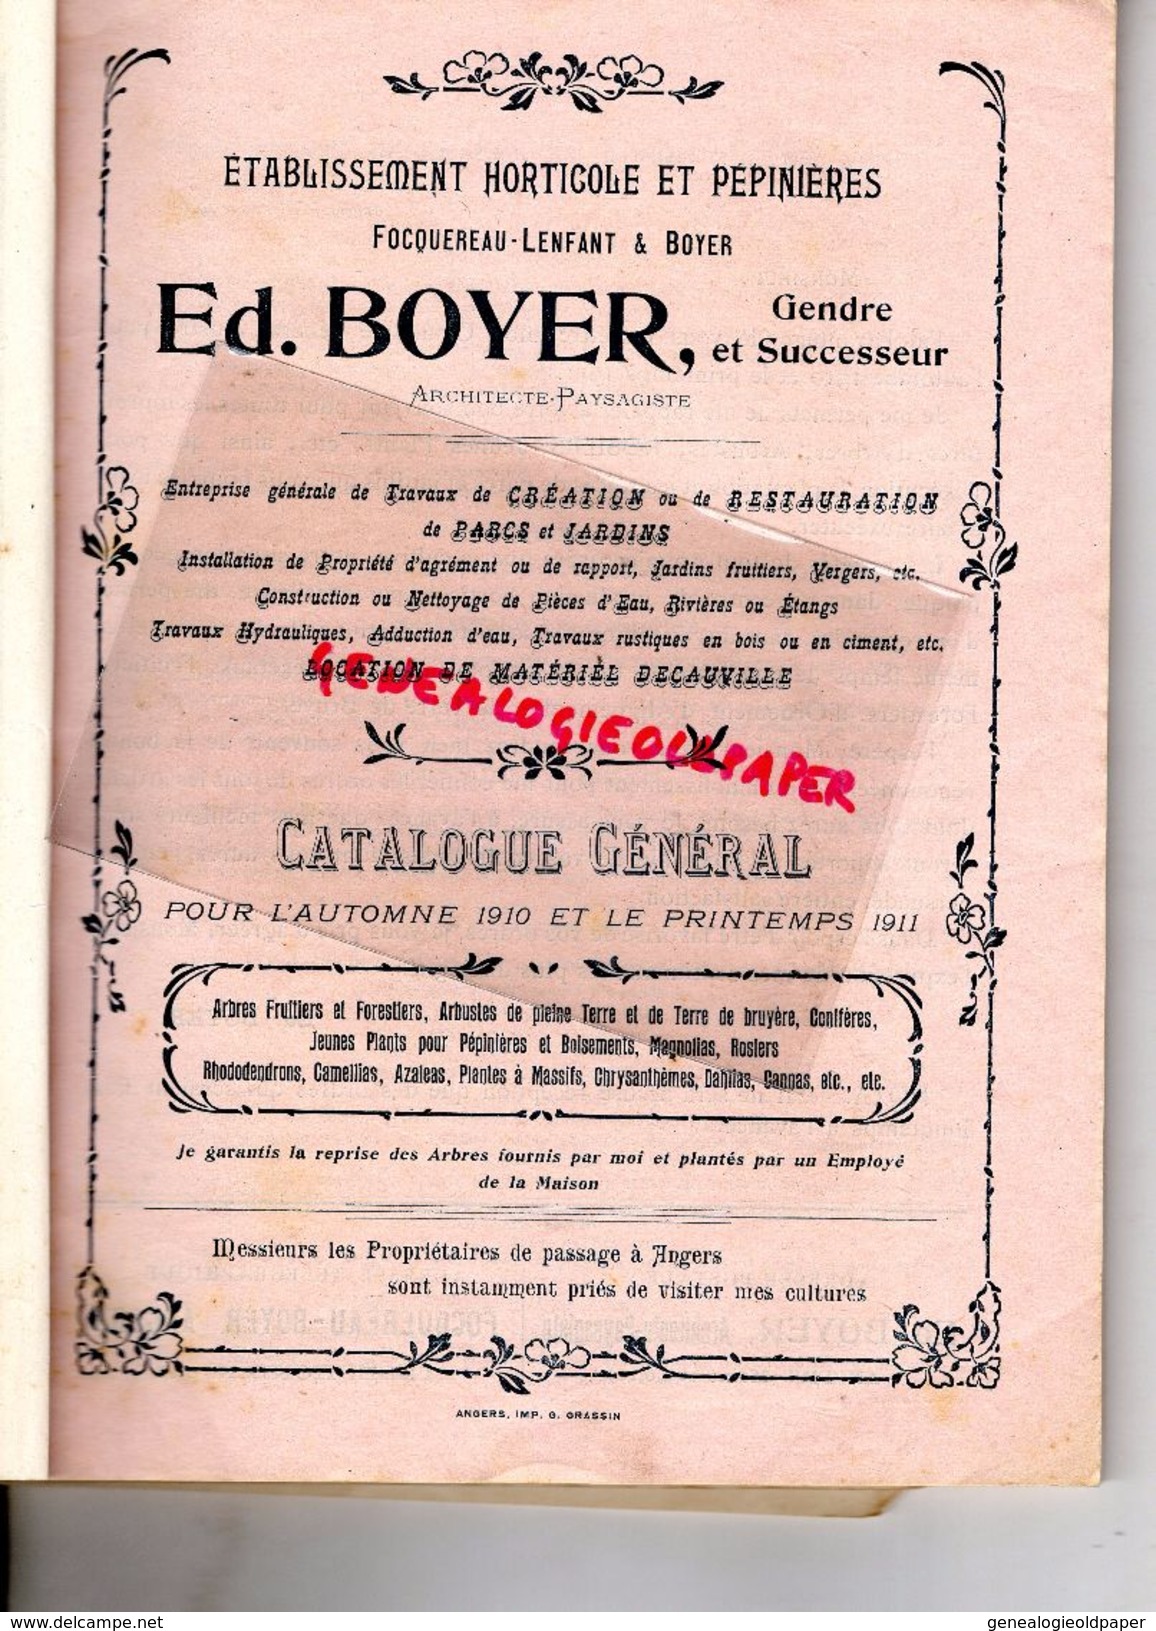 49- ANGERS-RARE CATALOGUE FOCQUEREAU LENFANT BOYER- ARCHITECTE PAYSAGISTE-HORTICULTURE PEPINIERES-25 RUE ST LEONARD-1910